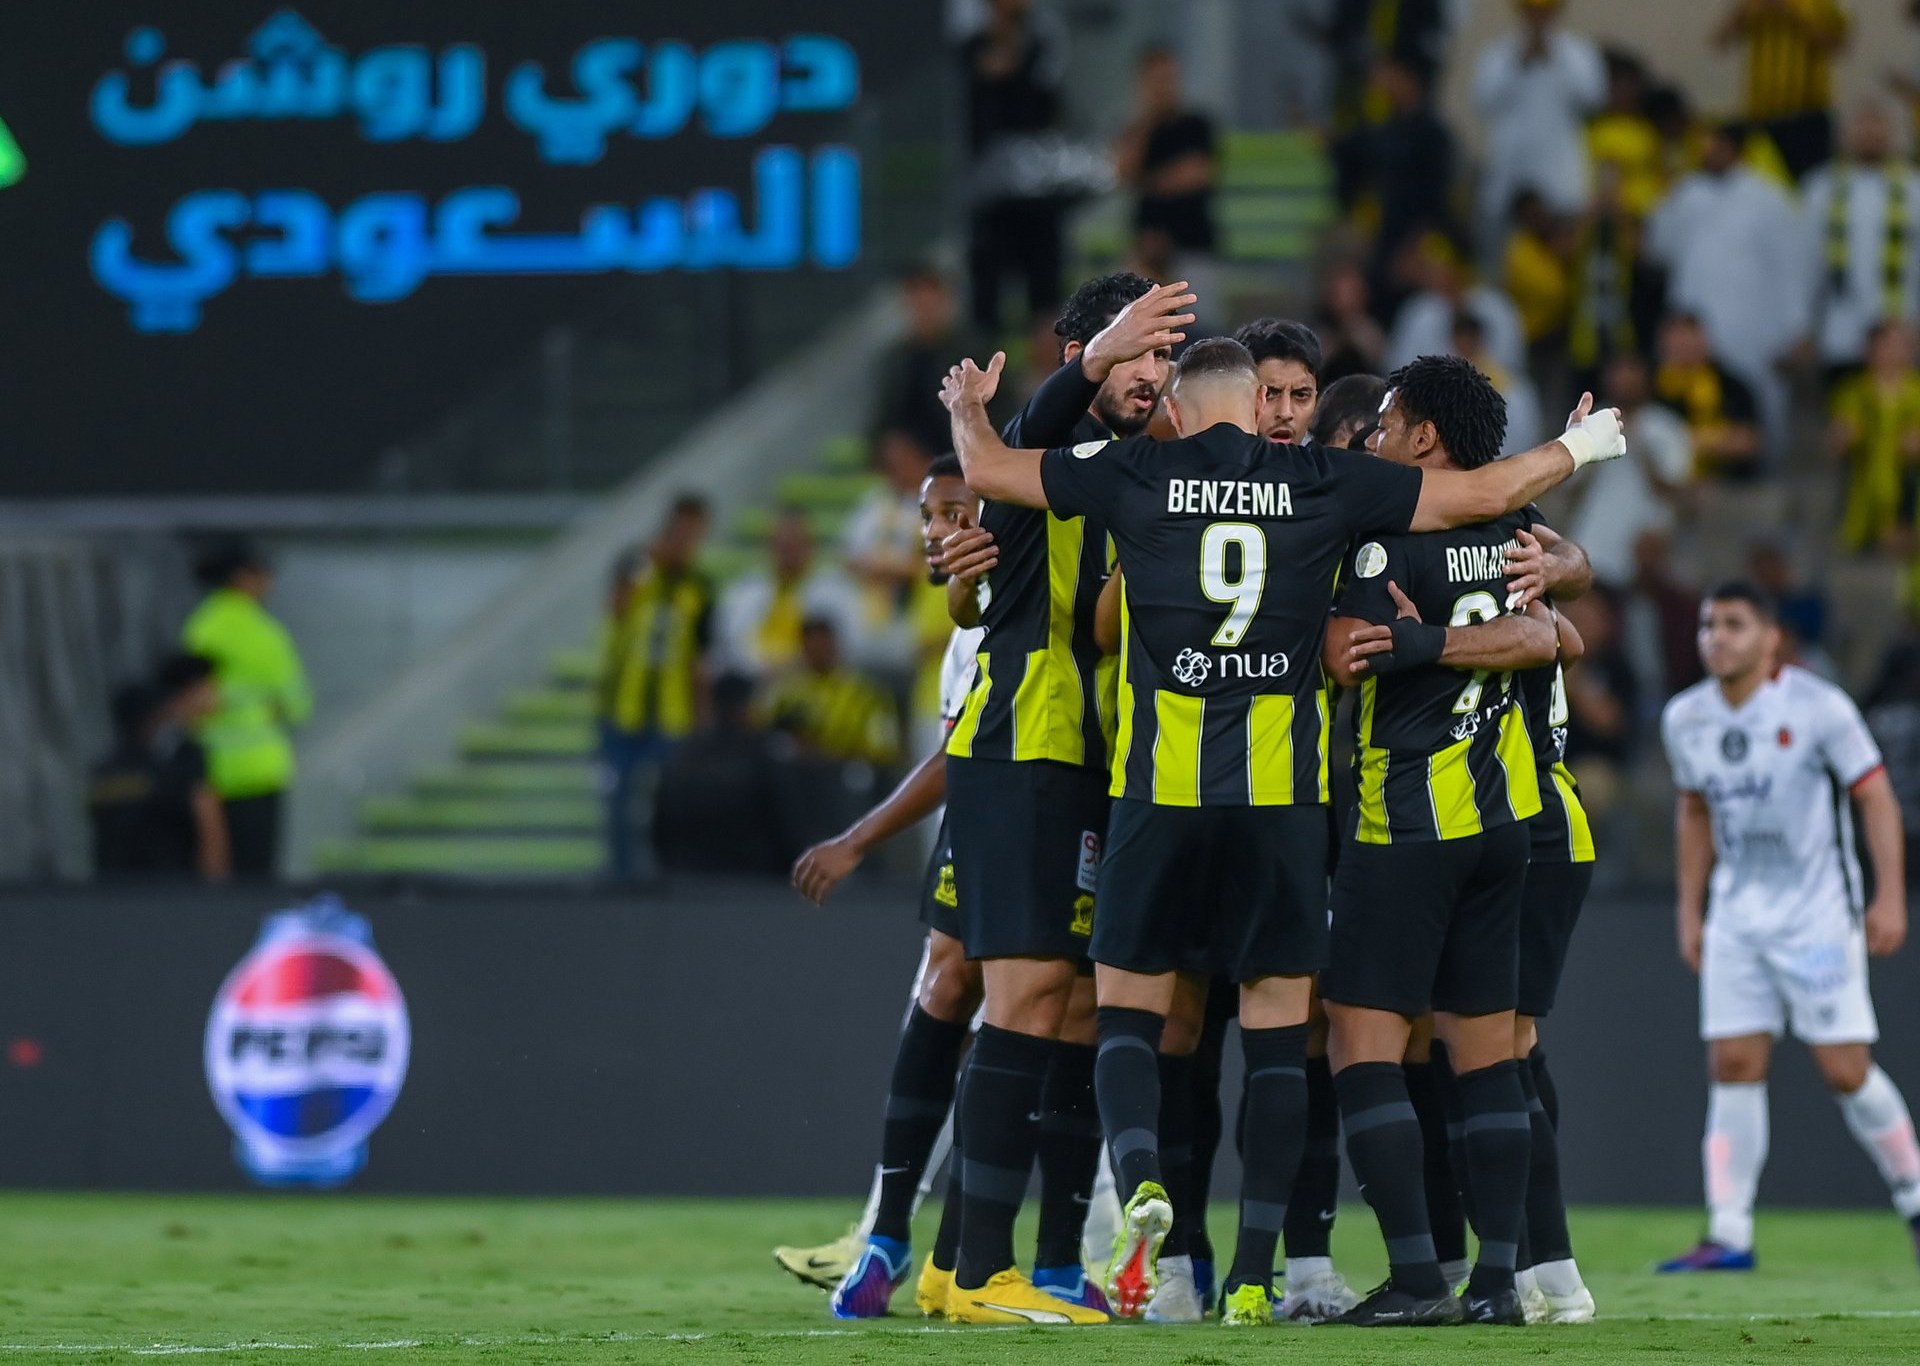 حمد الله يقود الاتحاد للفوز على الرياض في عودة بنزيمة | رياضة – البوكس نيوز